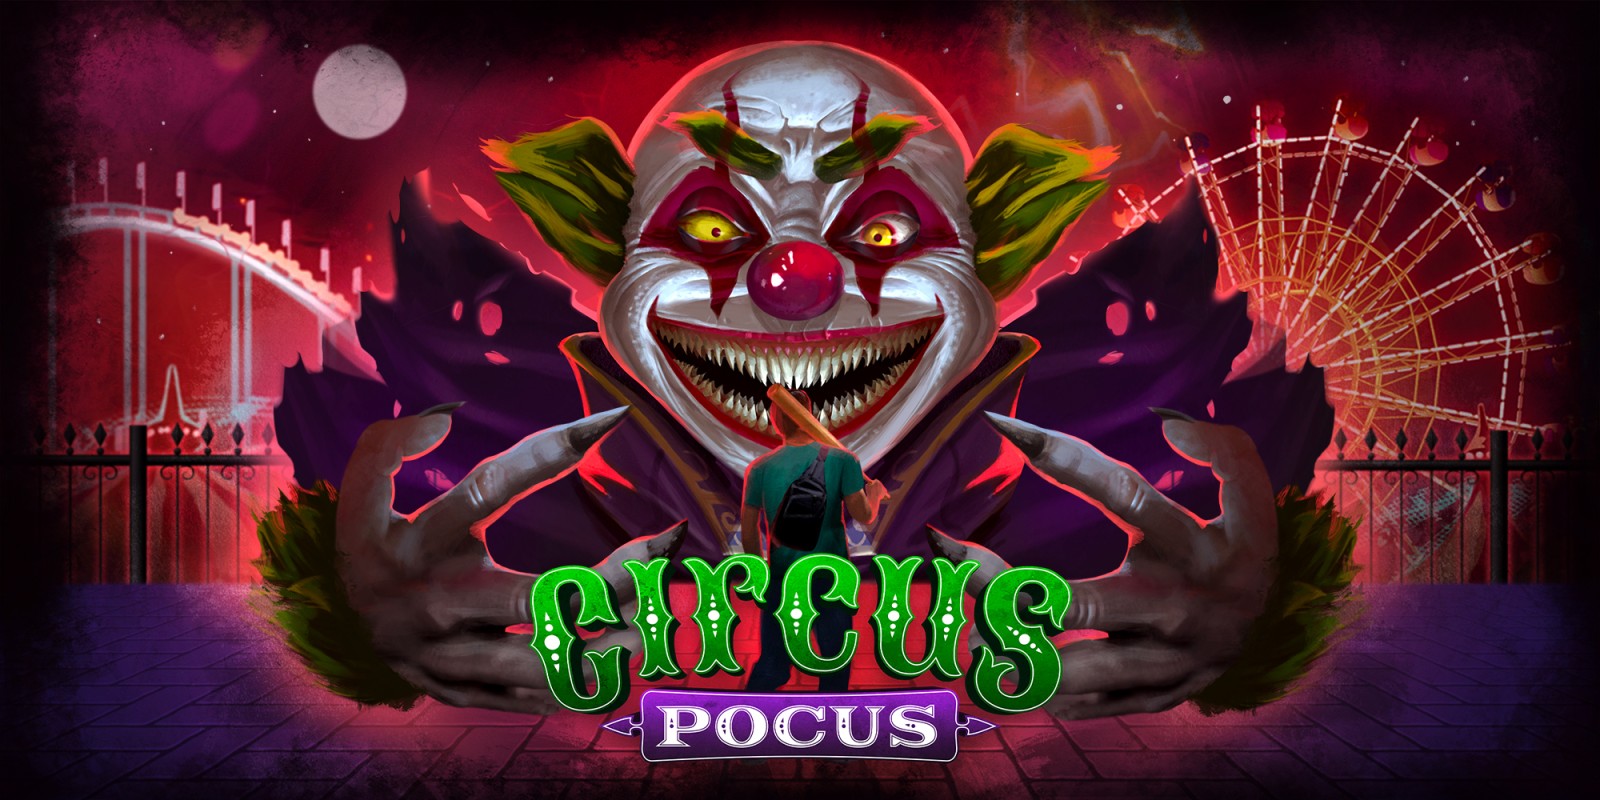 Circus Pocus